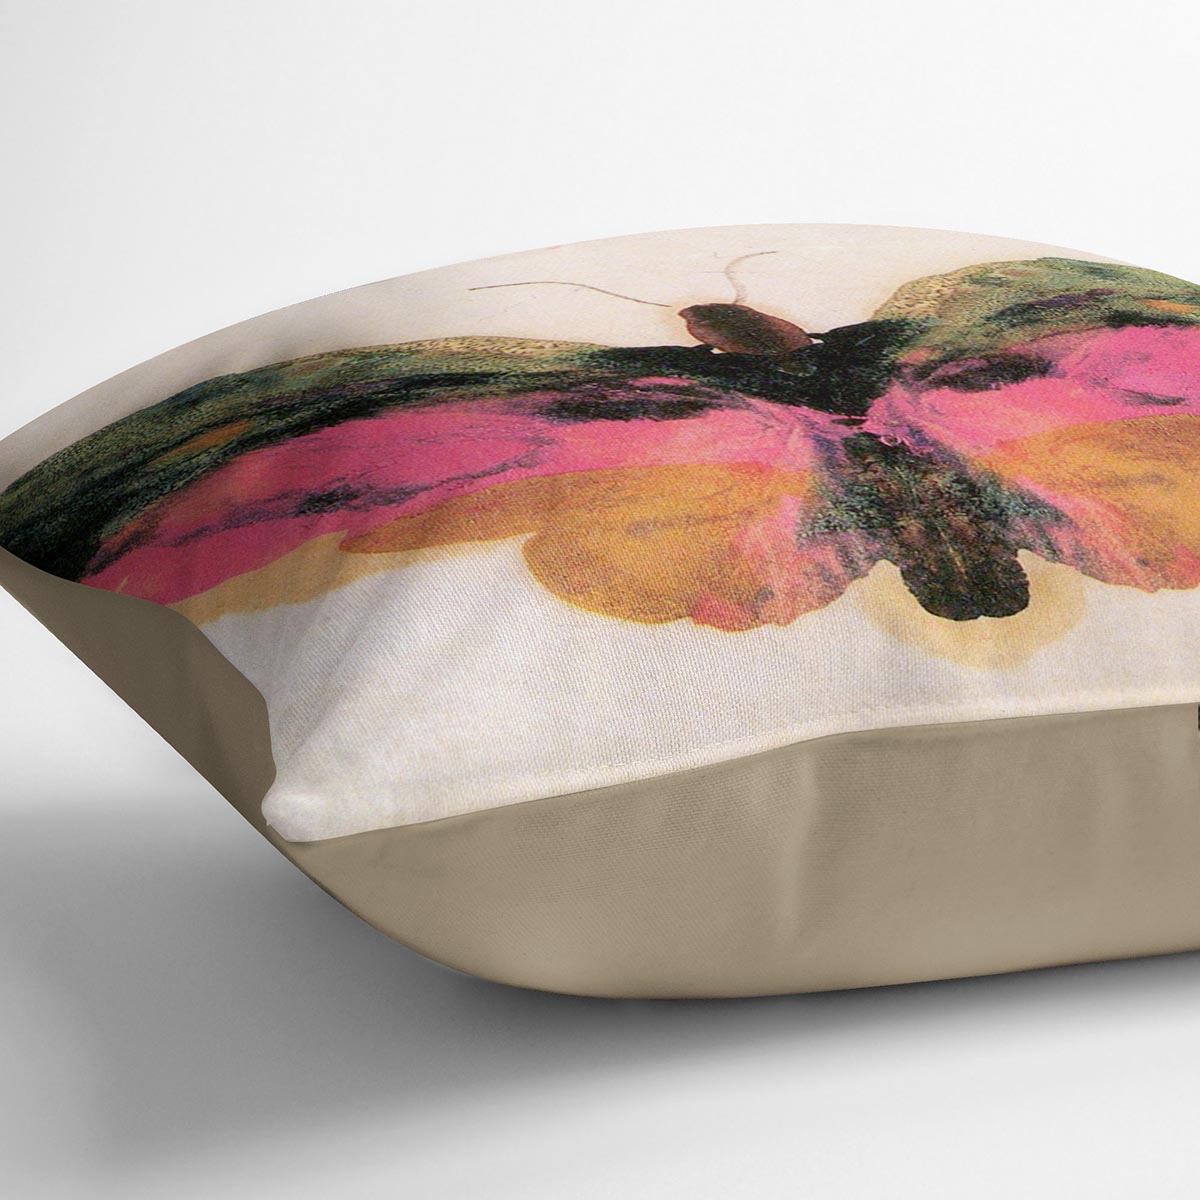 Butterfly by Bierstadt Cushion - Canvas Art Rocks - 2